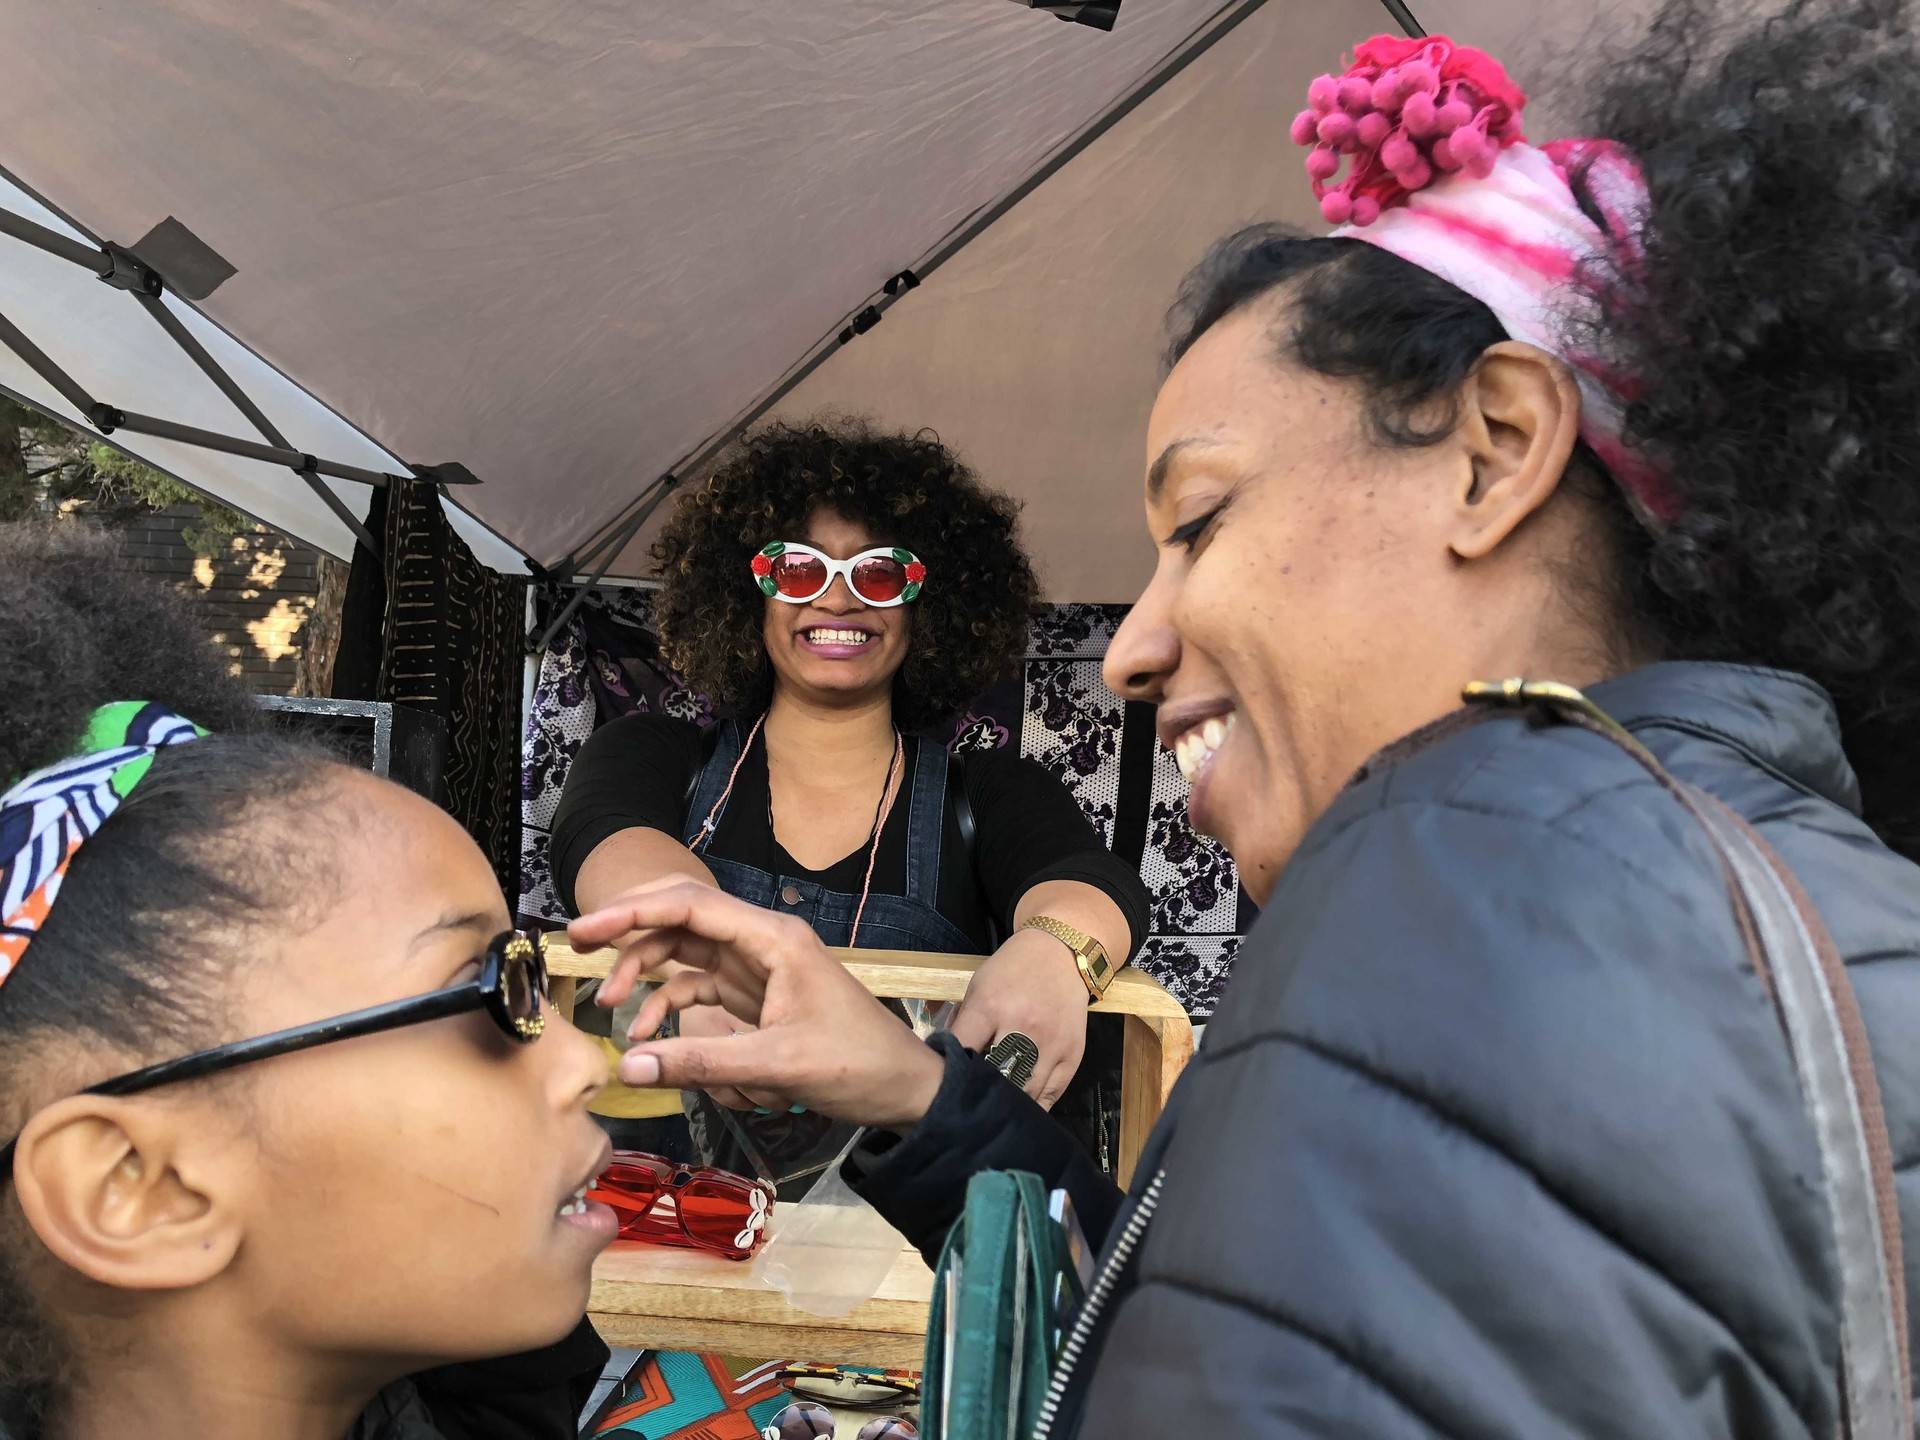 Oakland celebrates the inaugural Black Joy Parade on Sunday, February 25, 2018. Samantha Clark/KQED